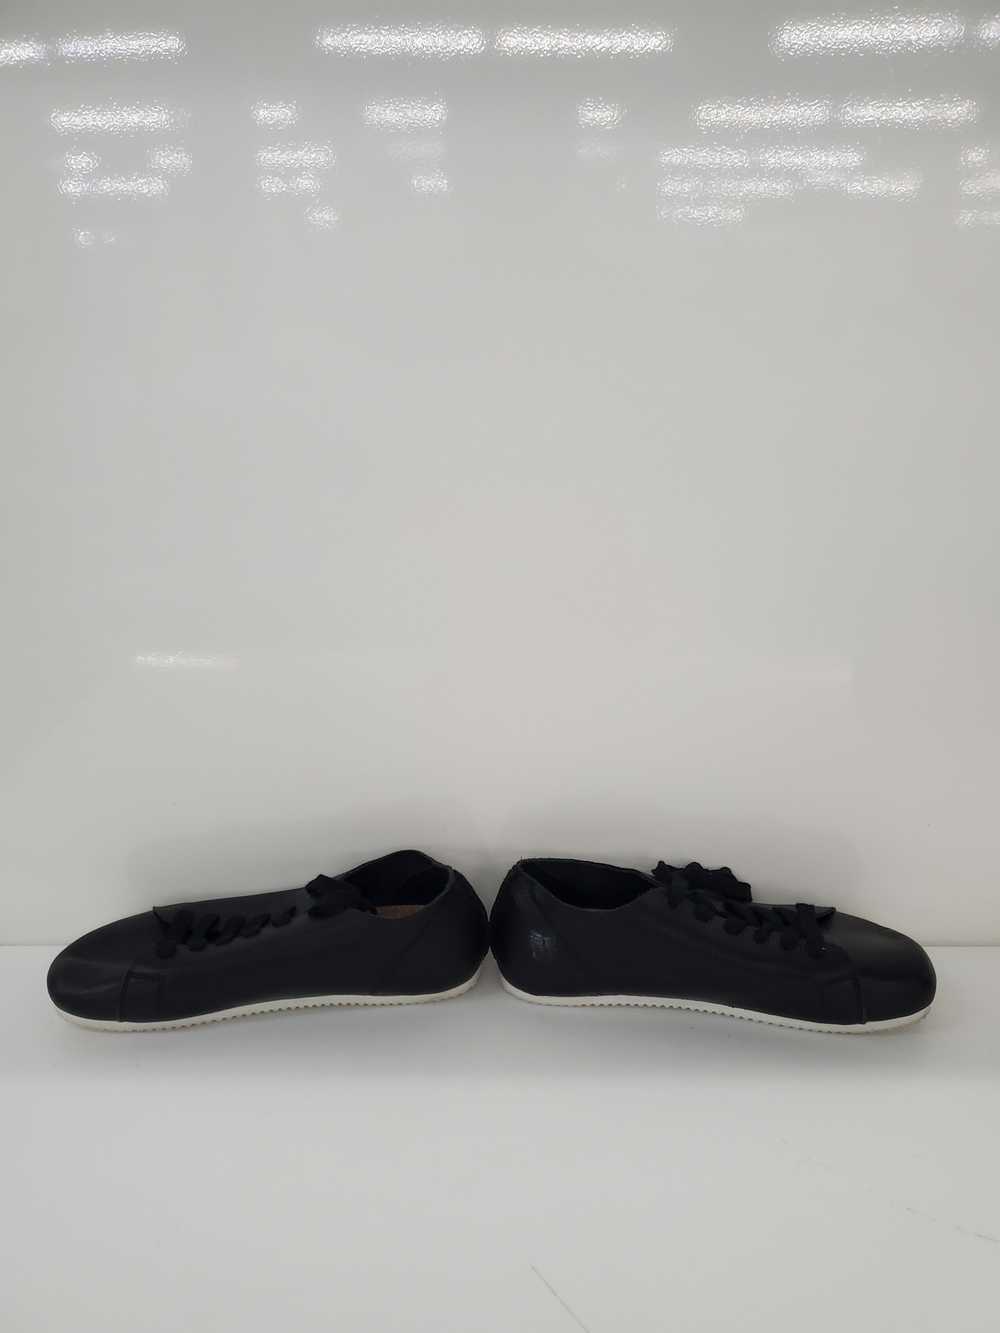 Men otz Shoes Leather Black Shoes Size-10.5 Used - image 2